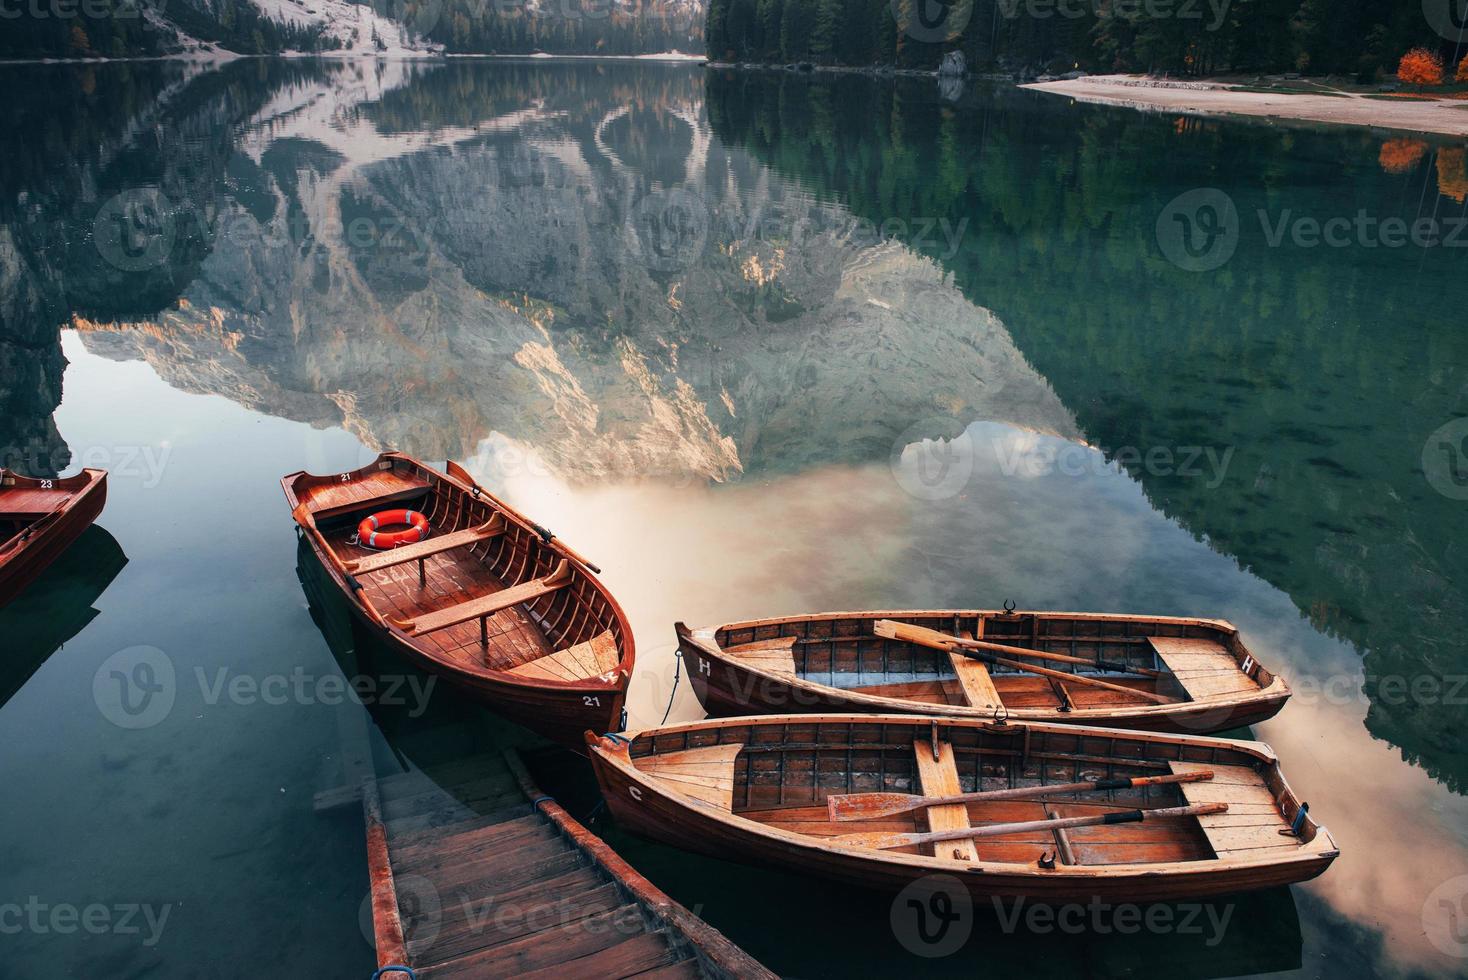 kom gewoon binnen en zwem. houten boten op het kristalmeer met majestueuze berg erachter. weerspiegeling in het water foto